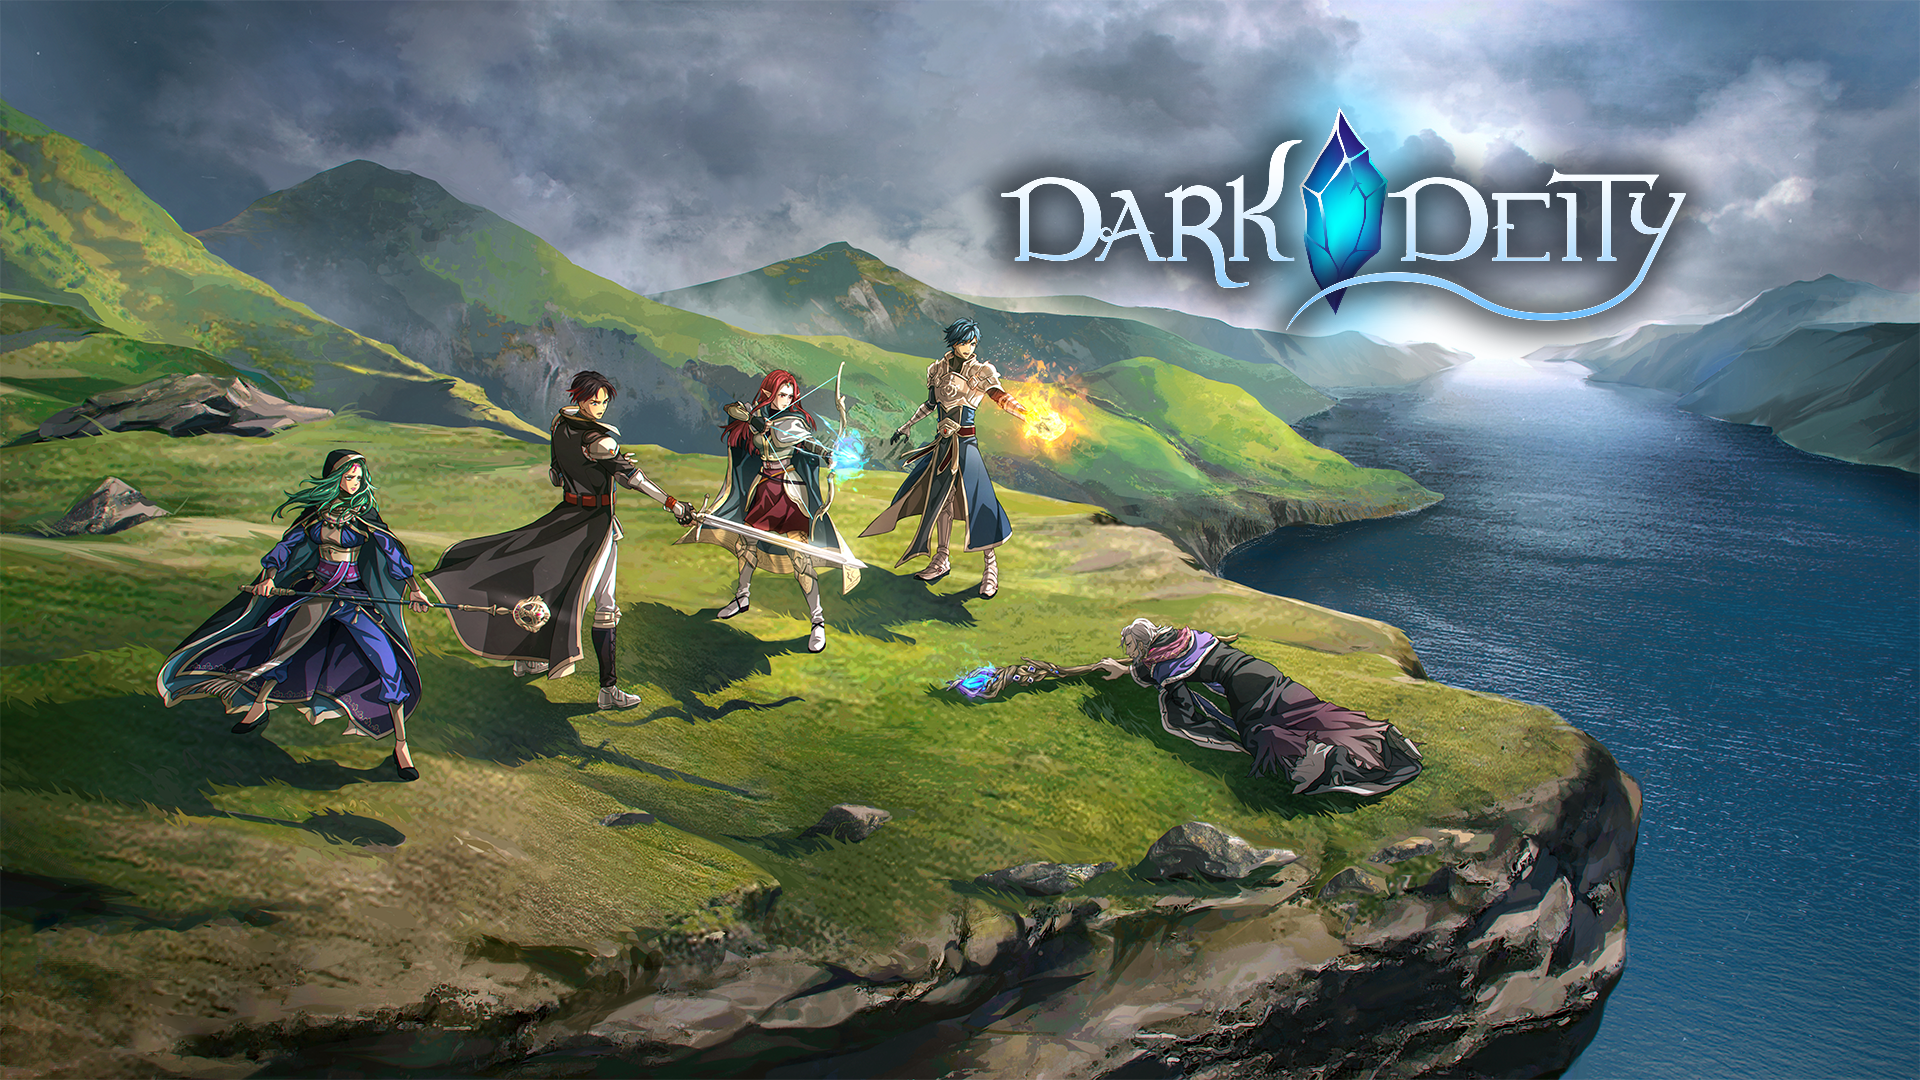 Video Game Dark Deity HD Wallpaper | Background Image